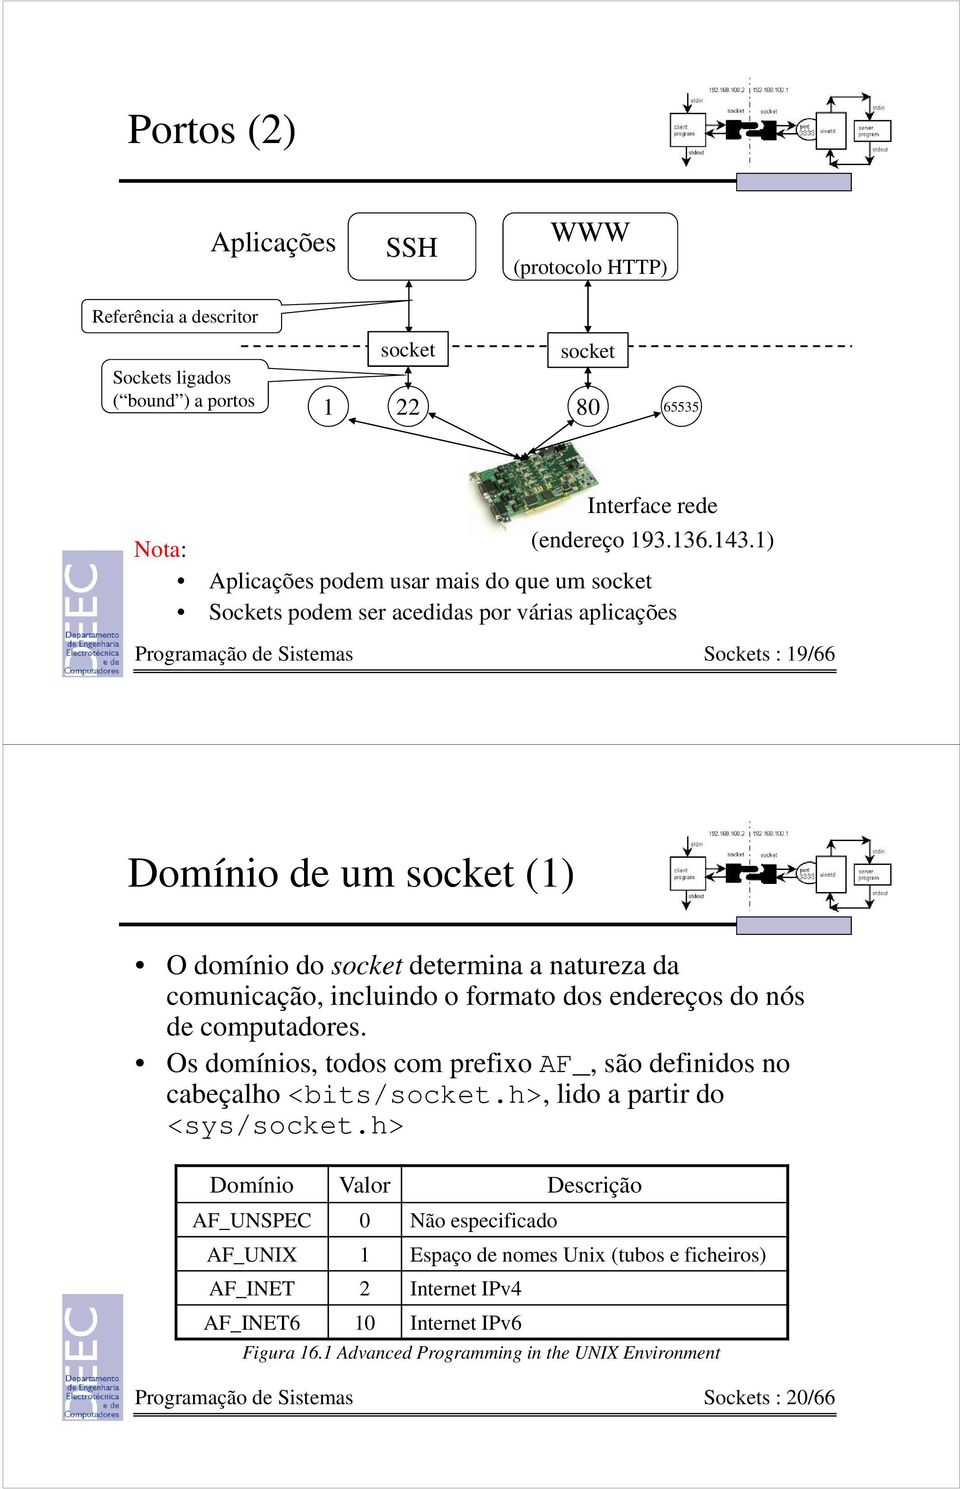 natureza da comunicação, incluindo o formato dos endereços do nós de computadores. Os domínios, todos com prefixo AF_, são definidos no cabeçalho <bits/socket.h>, lido a partir do <sys/socket.